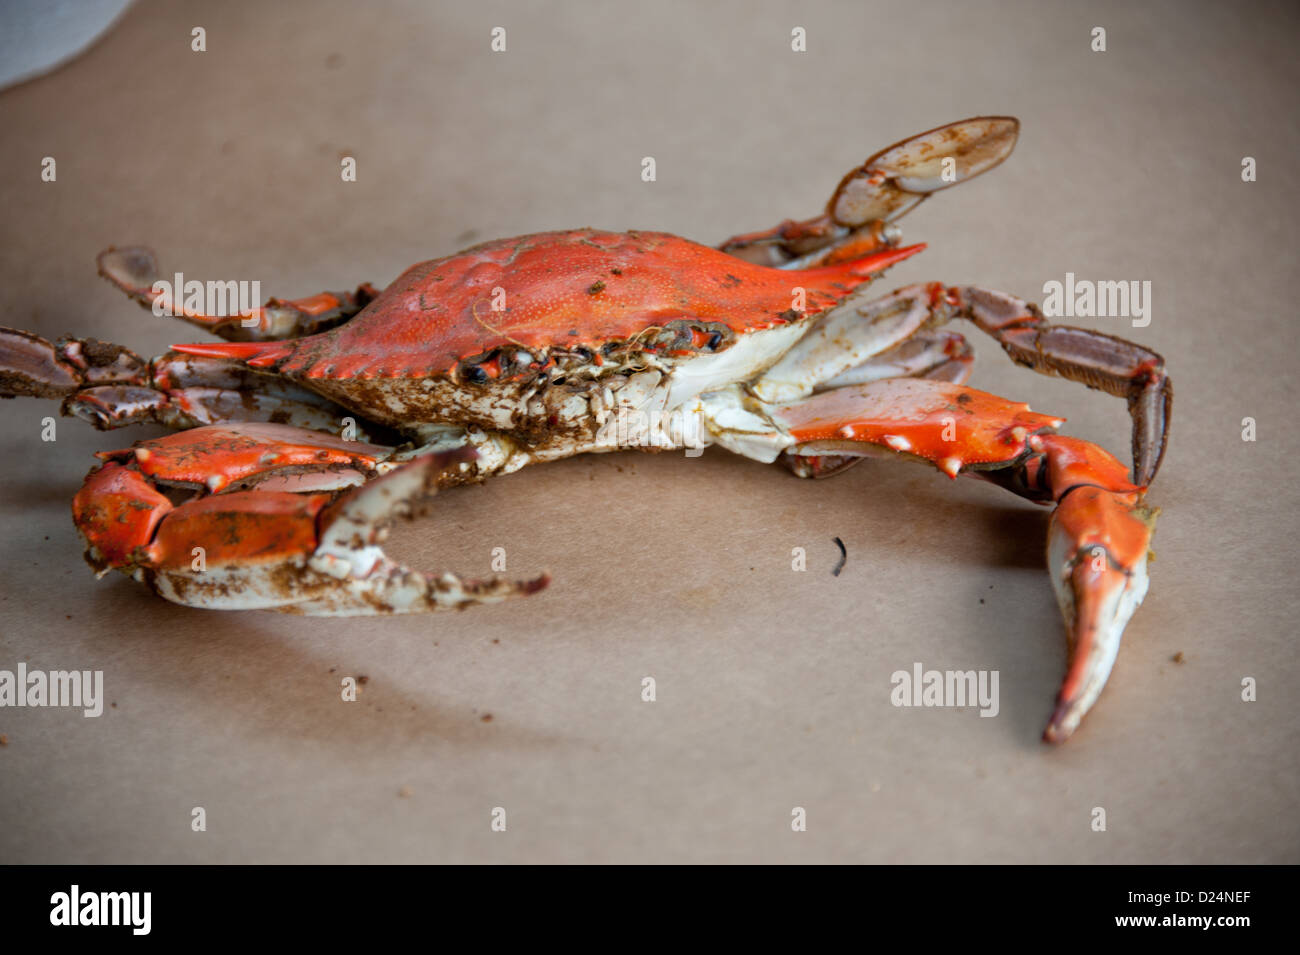 Les crabes cuits à la Maryland avec old bay dans un bol Banque D'Images